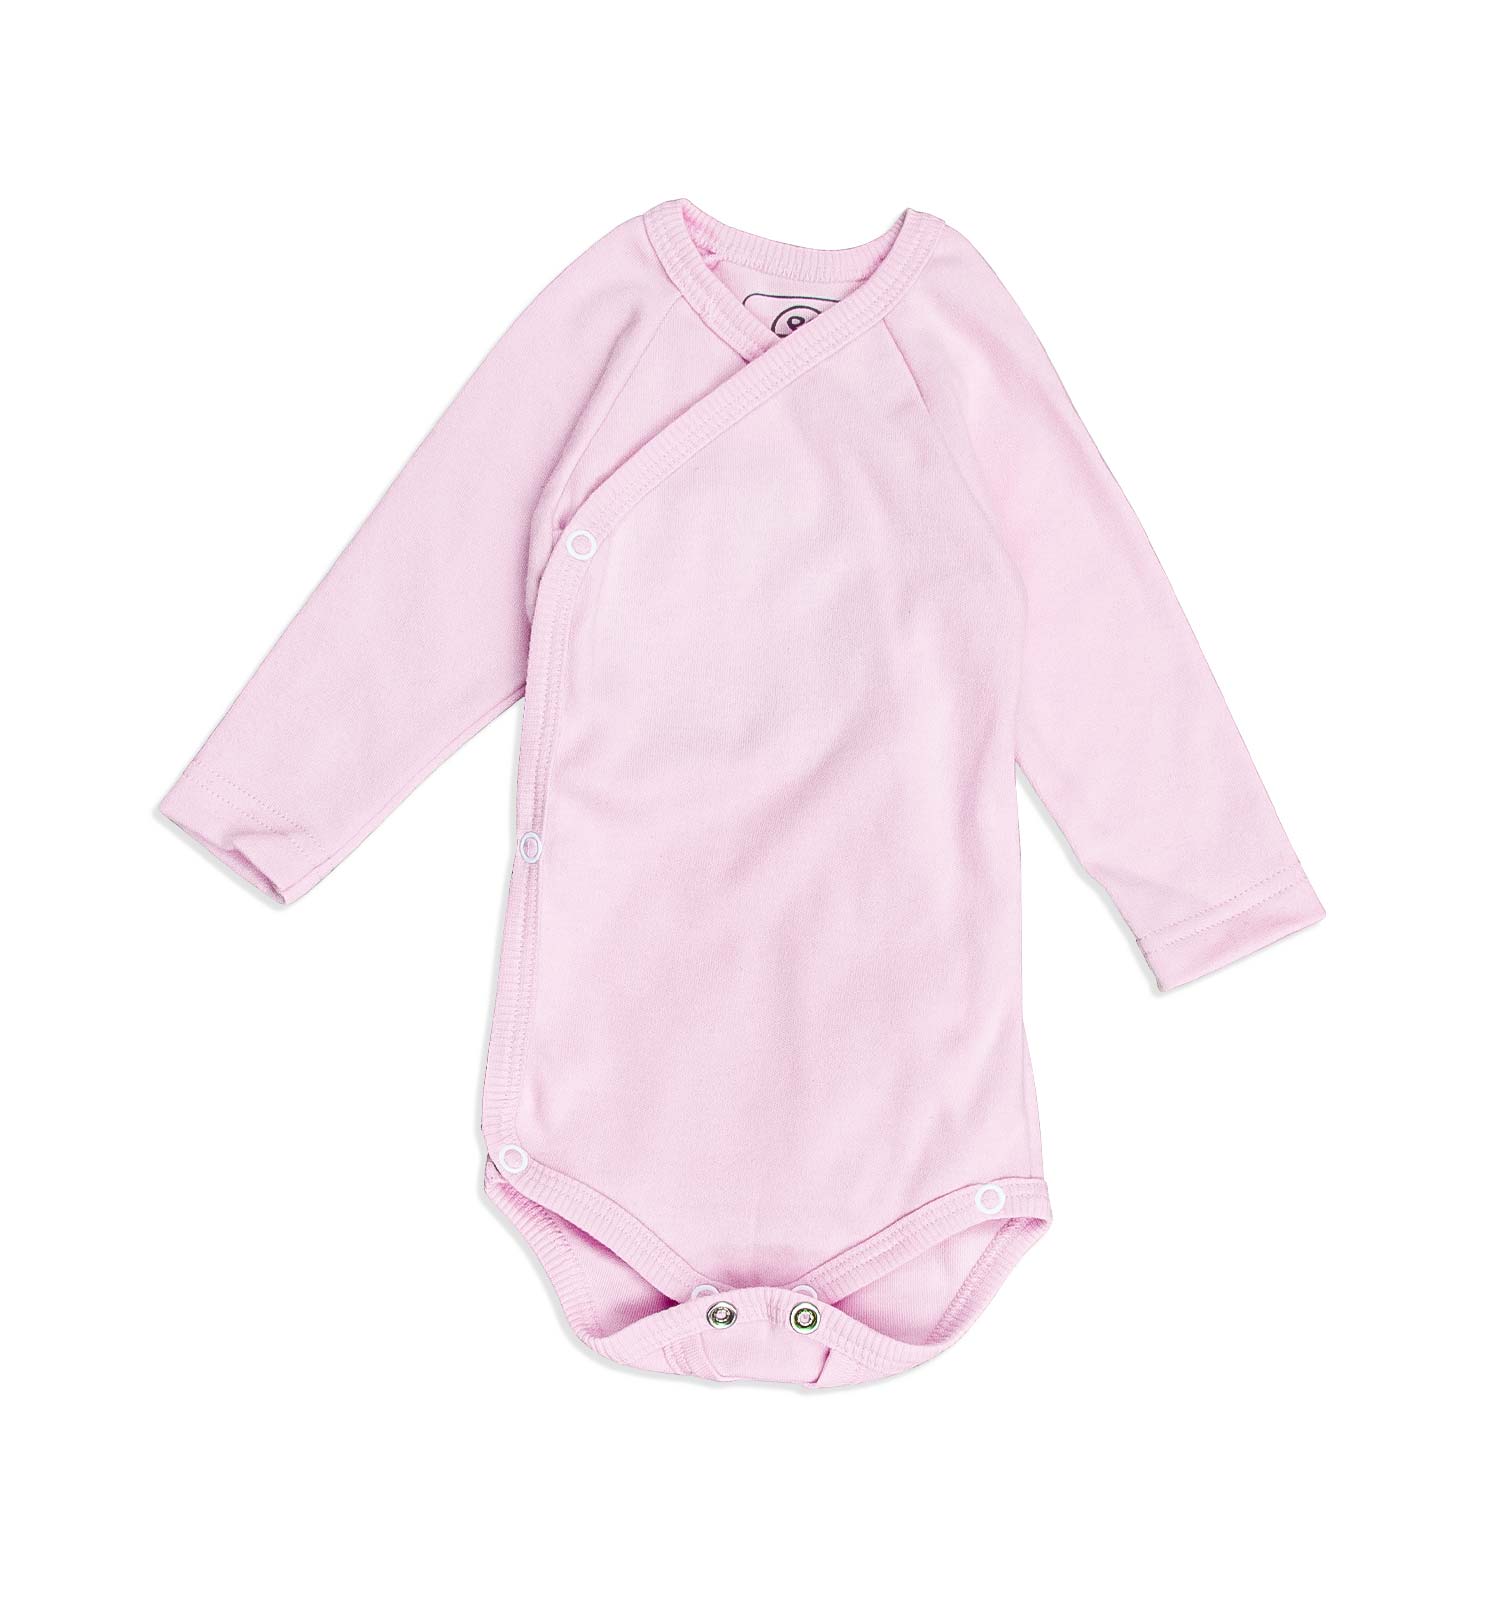 Baby Wickelbody komplett zum Öffnen in rosa Newborn